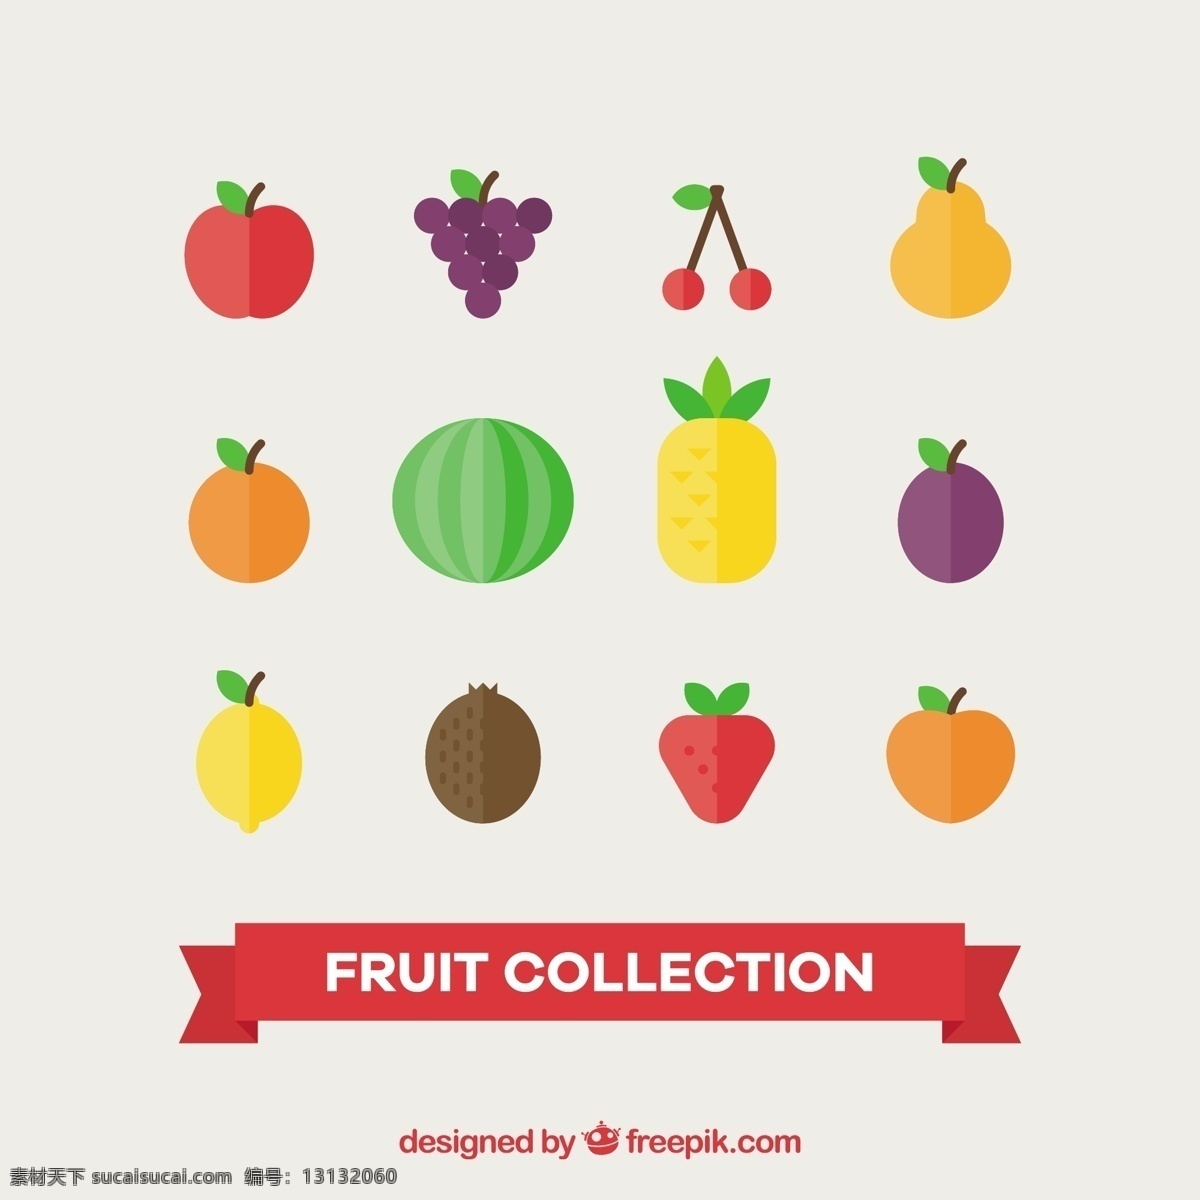 平面设计 中 美味 水果 品种 食品 夏季 颜色 橙子 苹果 平板 天然 健康 草莓 菠萝 柠檬 吃 健康食品 西瓜 葡萄 饮食